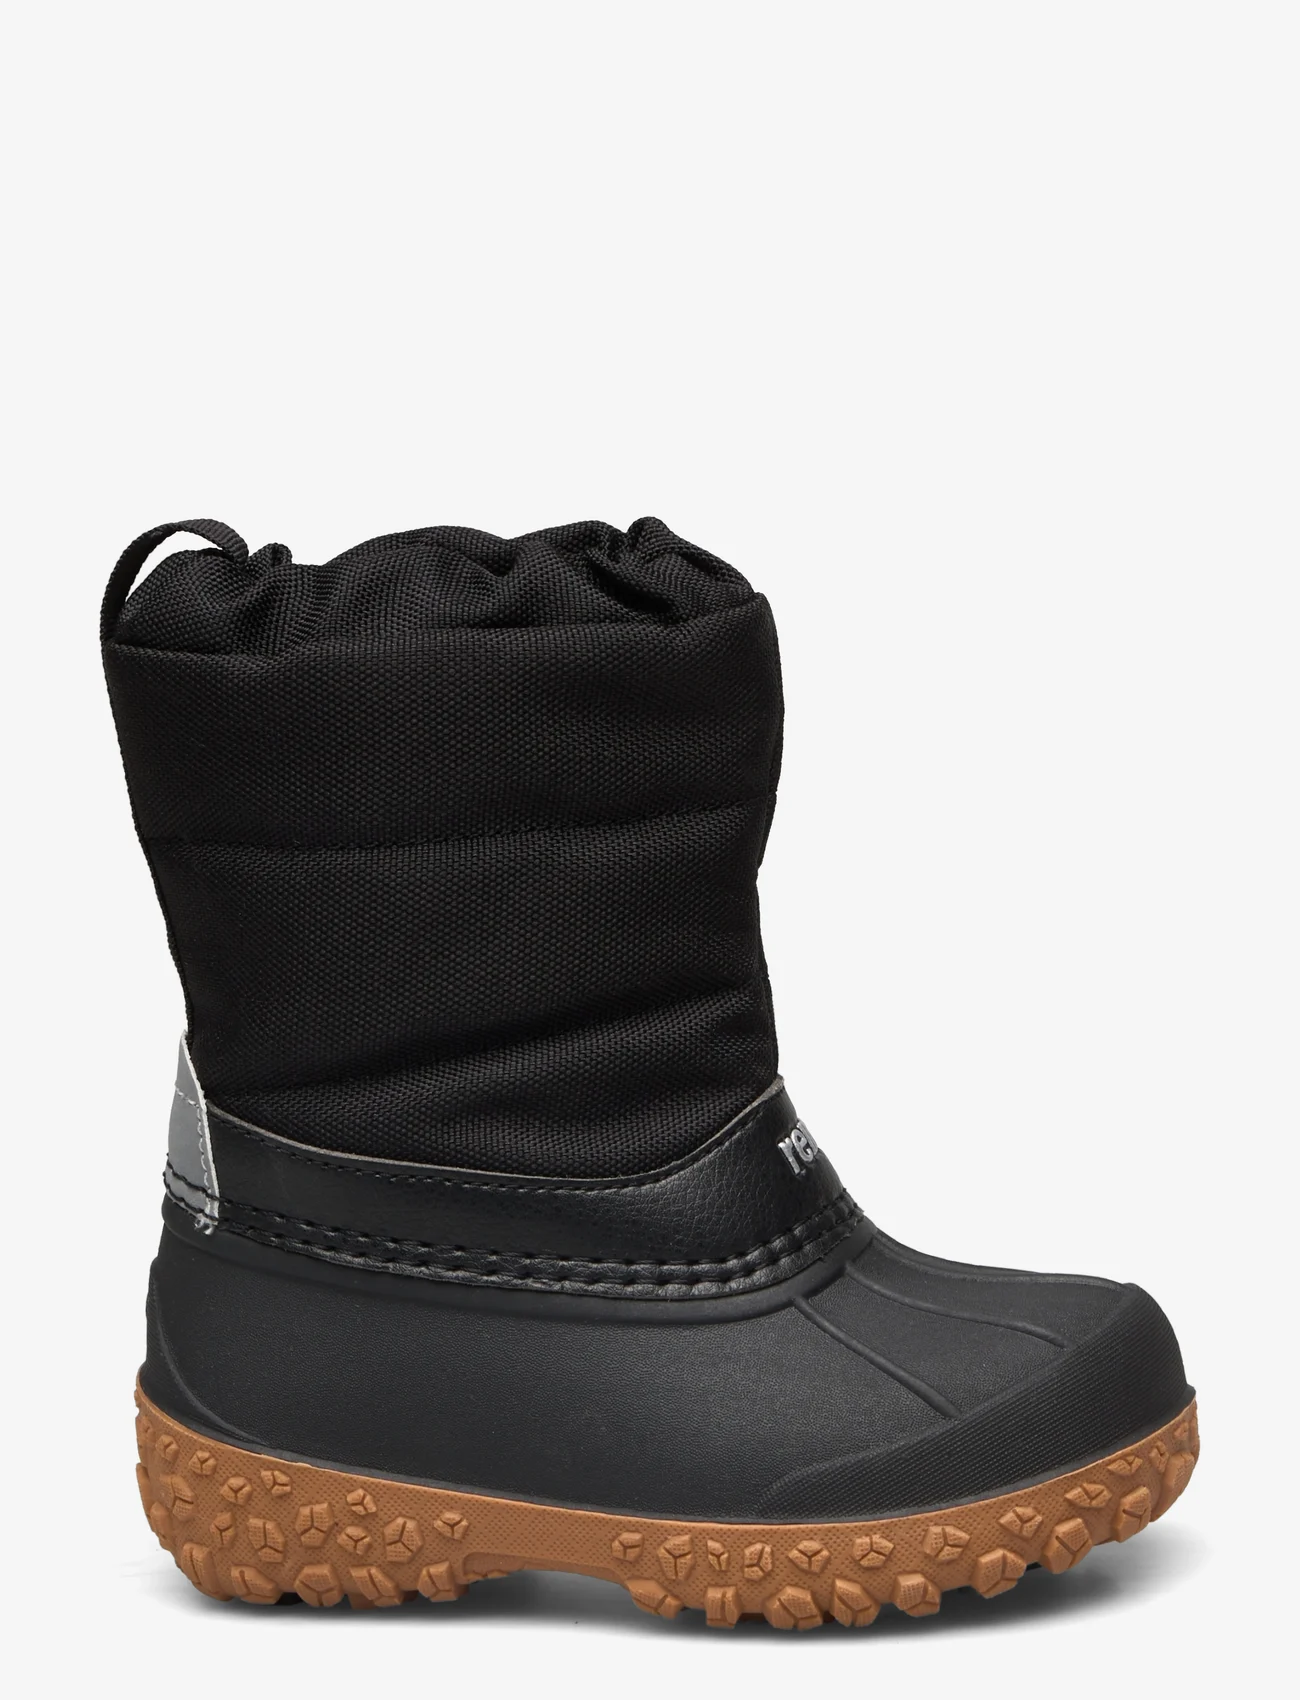 Reima - Winter boots, Loskari - børn - black - 1